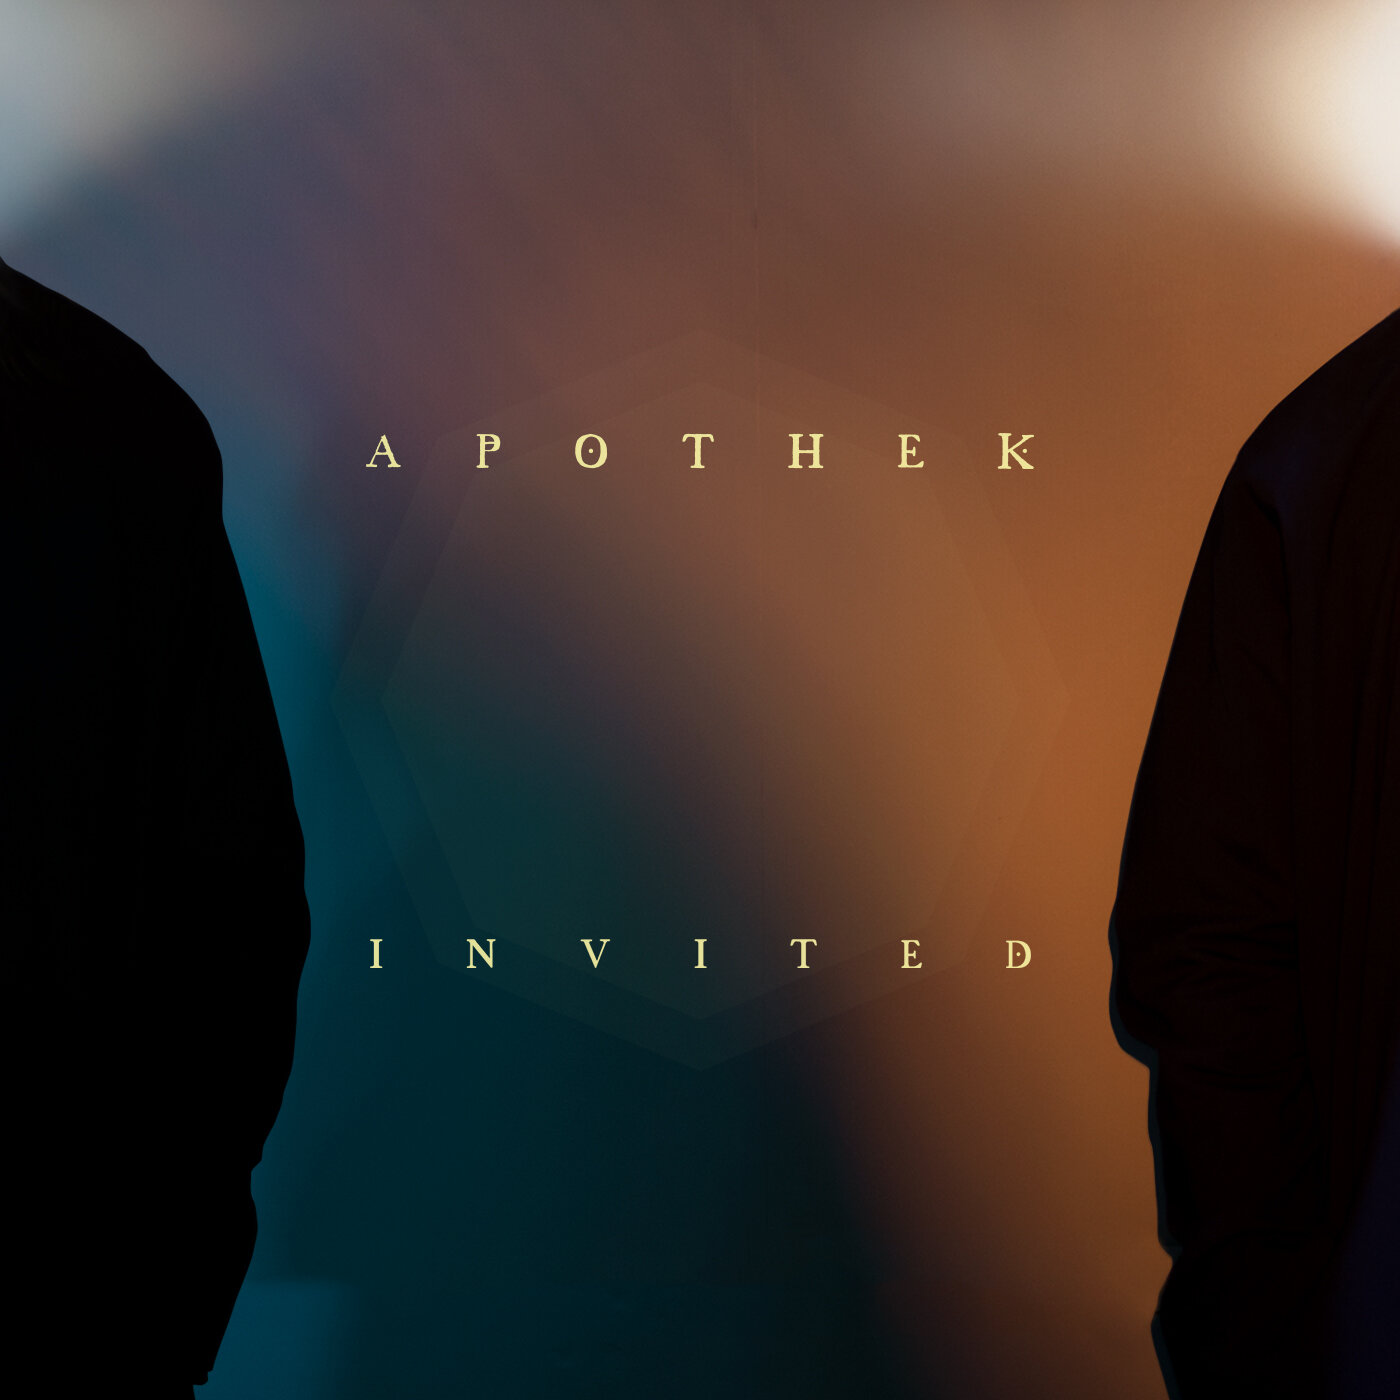 Apothek-invited Single cover.jpg